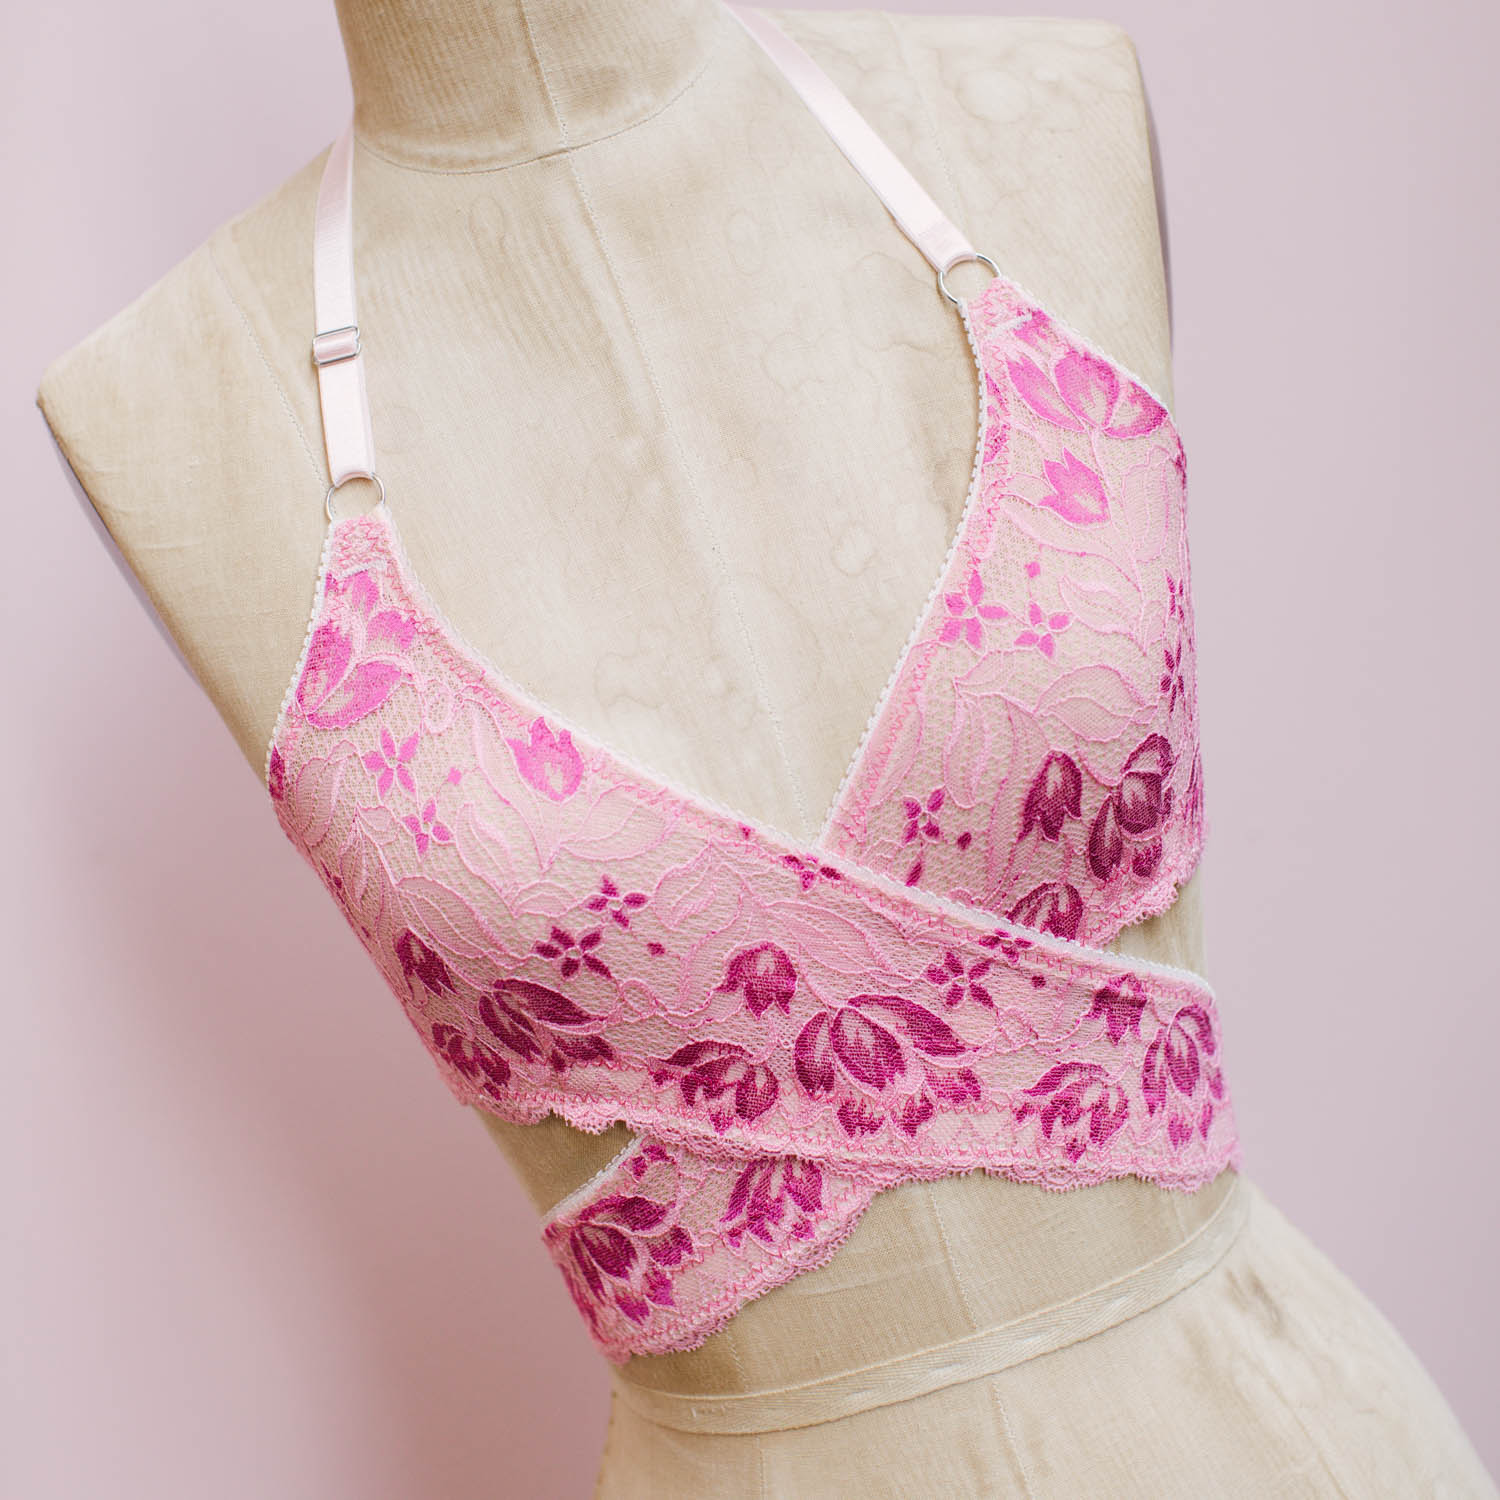 Sierra Wrap Bralette Sewing Pattern (Sizes XS-L) - Do It Yourself